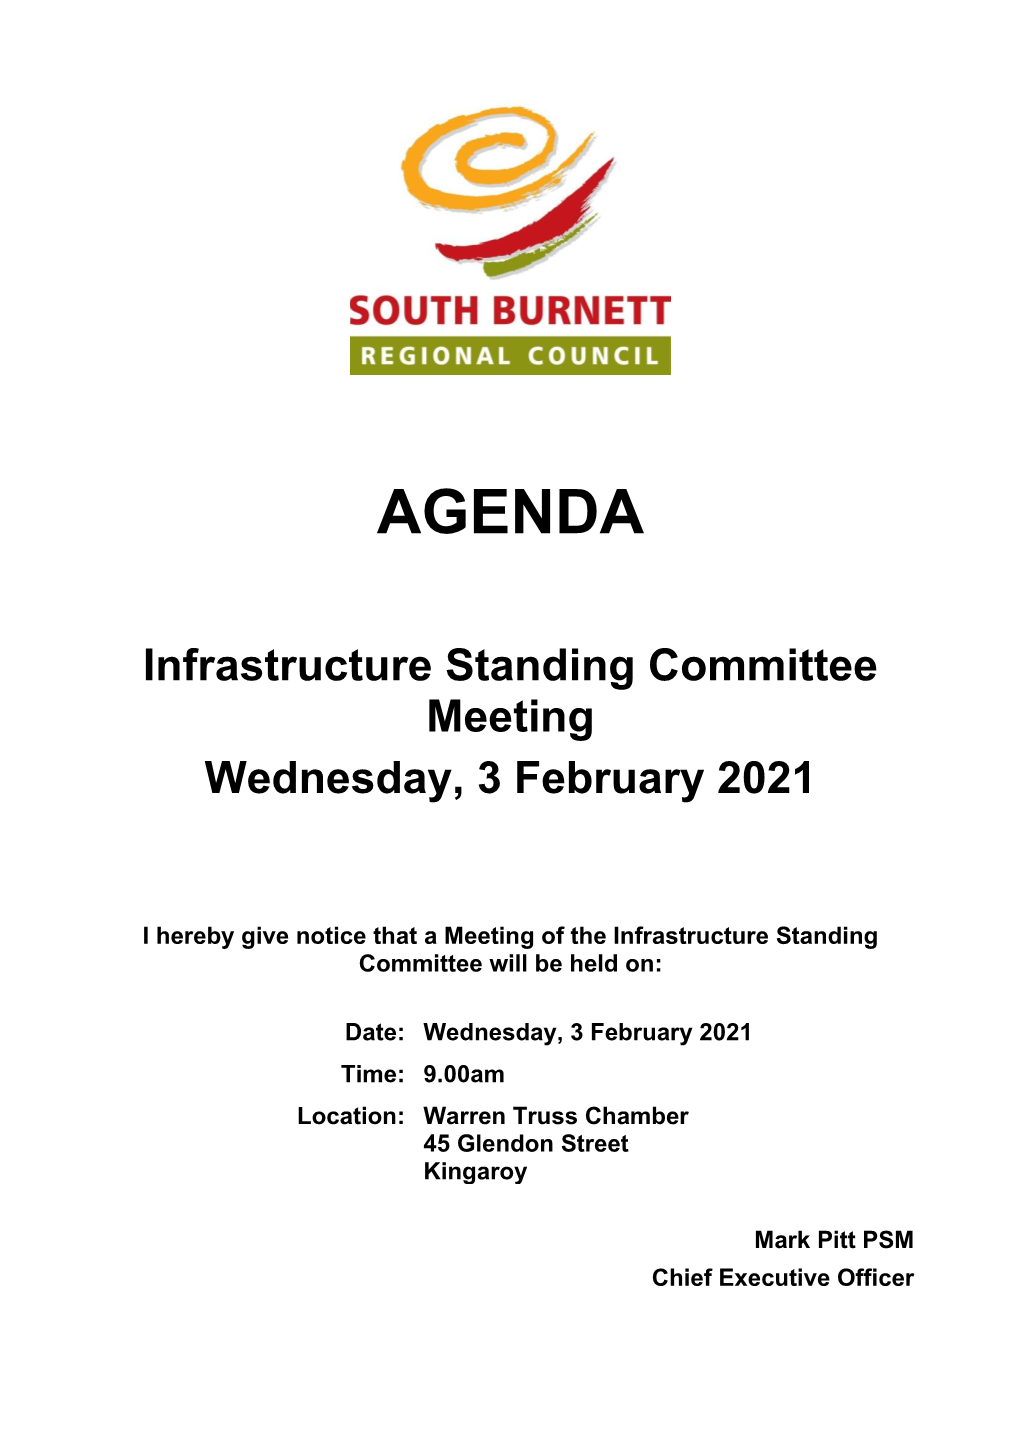 Agenda of Infrastructure Standing Committee Meeting